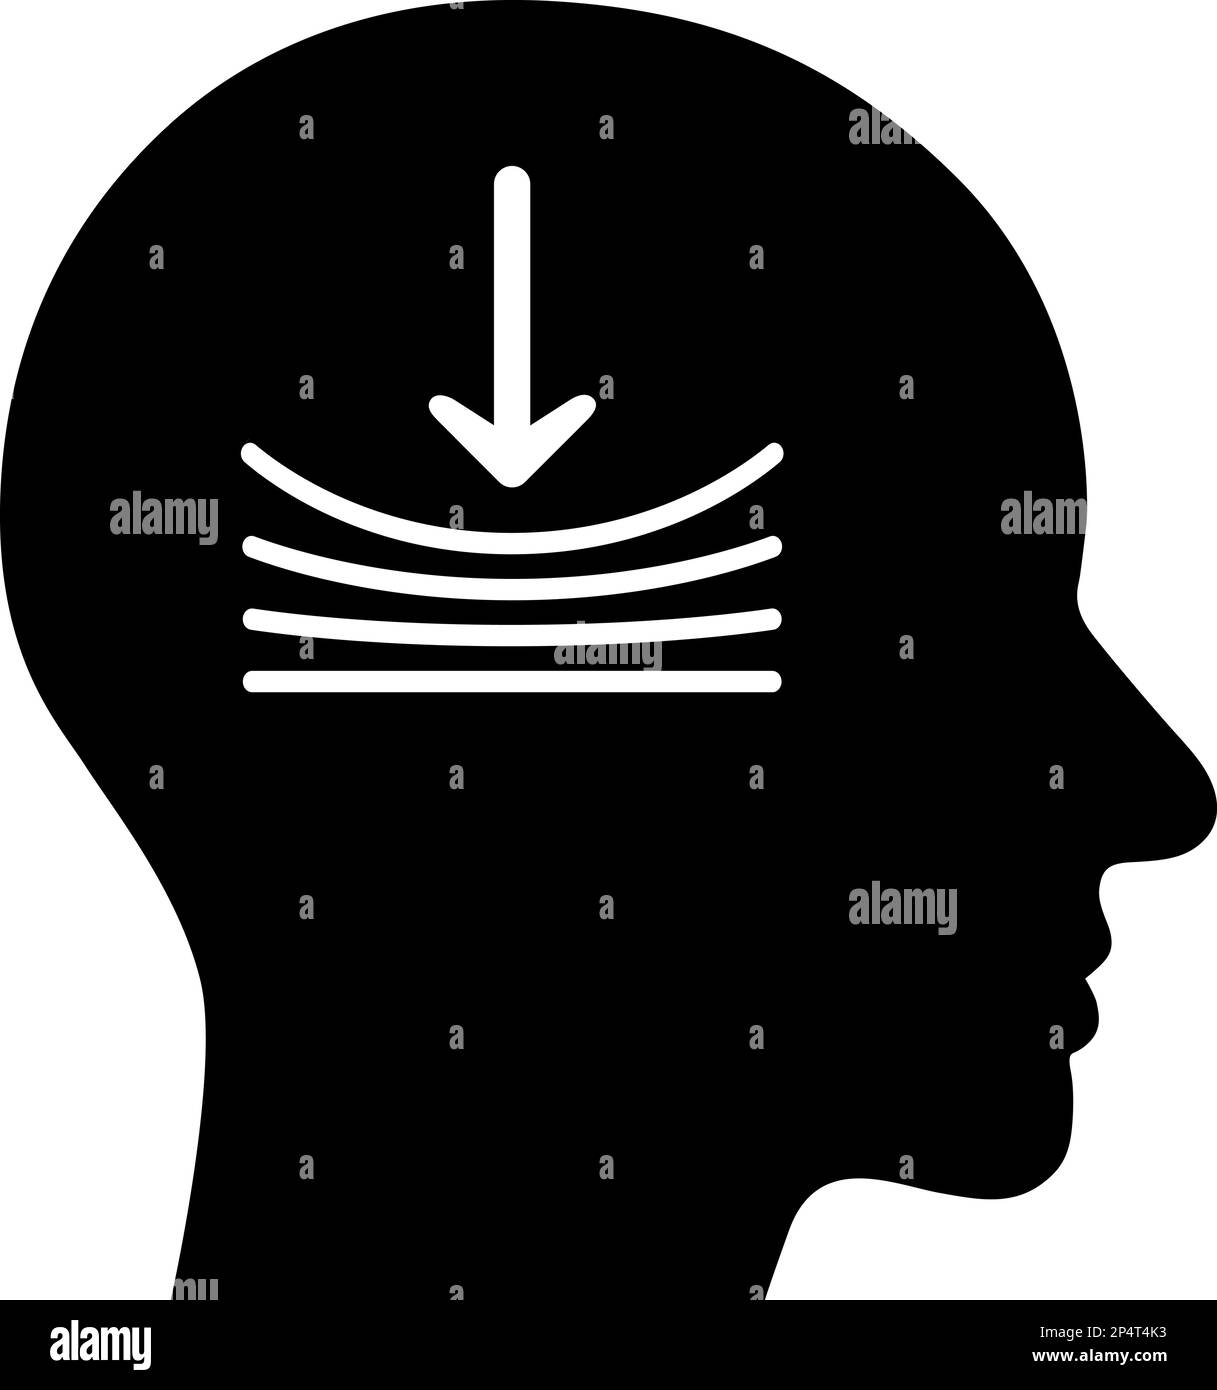 Icône plate dans la tête humaine symbolisant la pression comme un concept de résilience personnelle Illustration de Vecteur